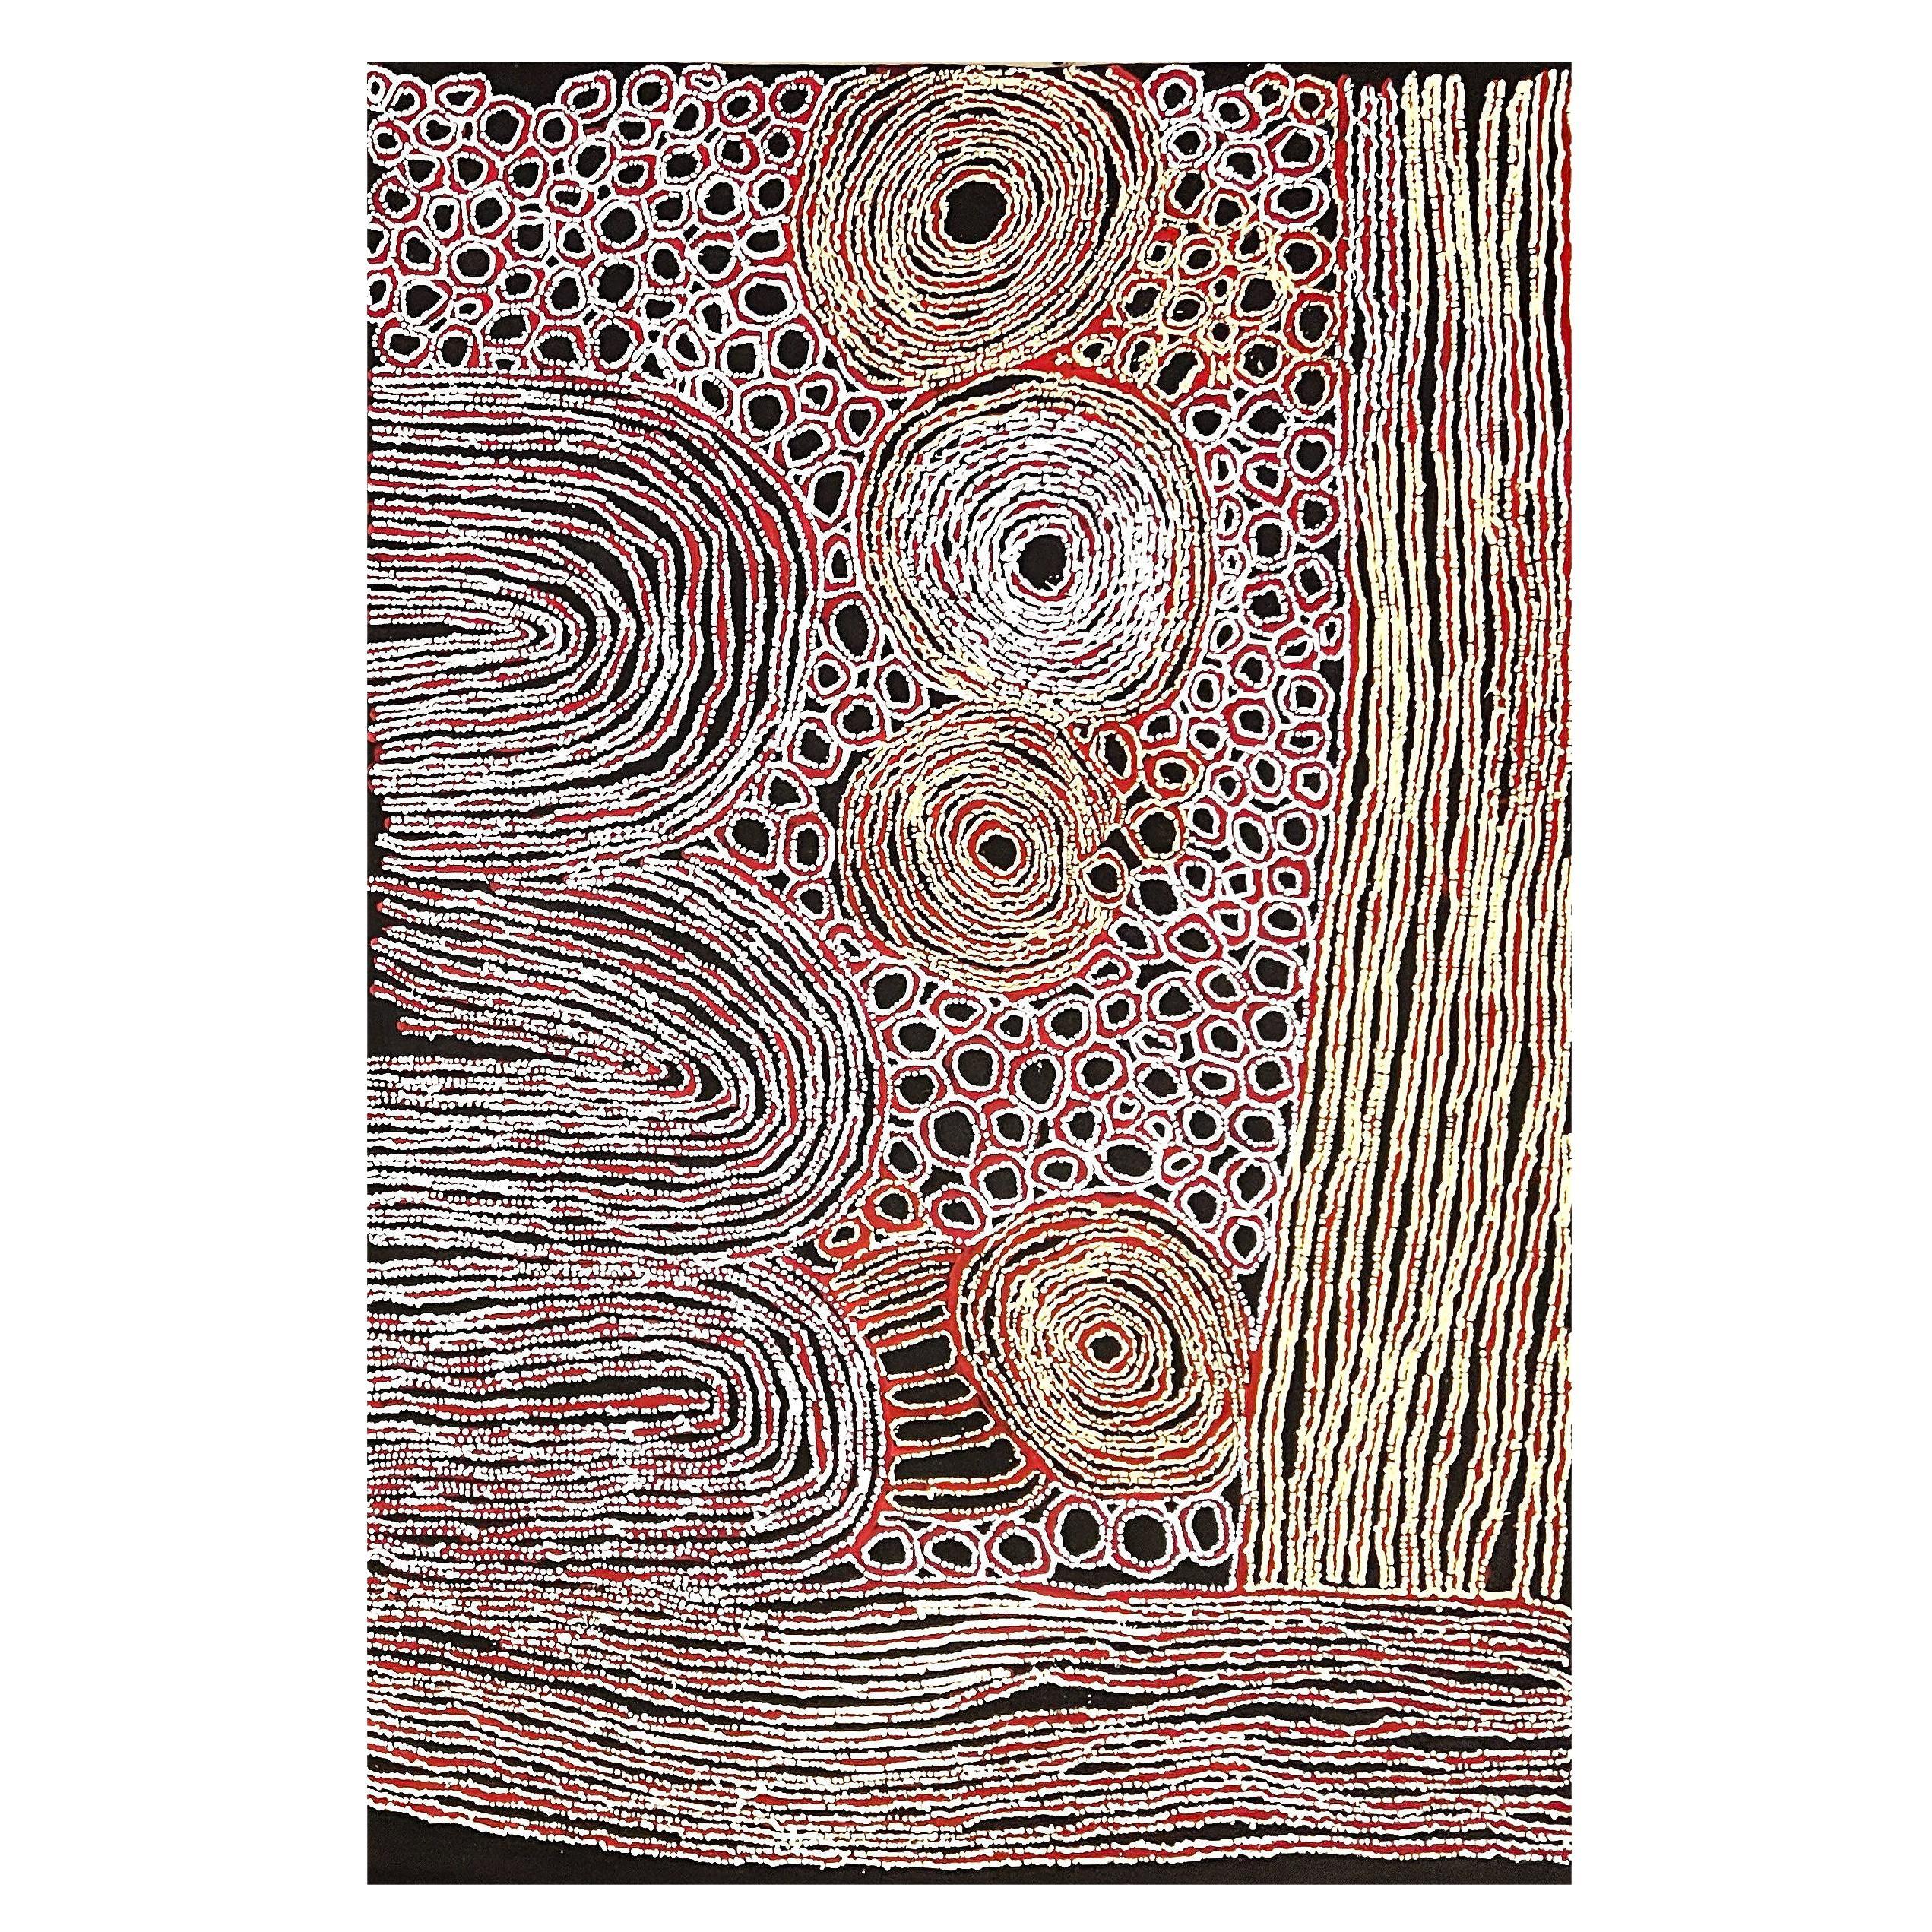 Zeitgenössisches Gemälde der australischen Ureinwohner Nord- und Südamerikas von Walangkura Napanangka